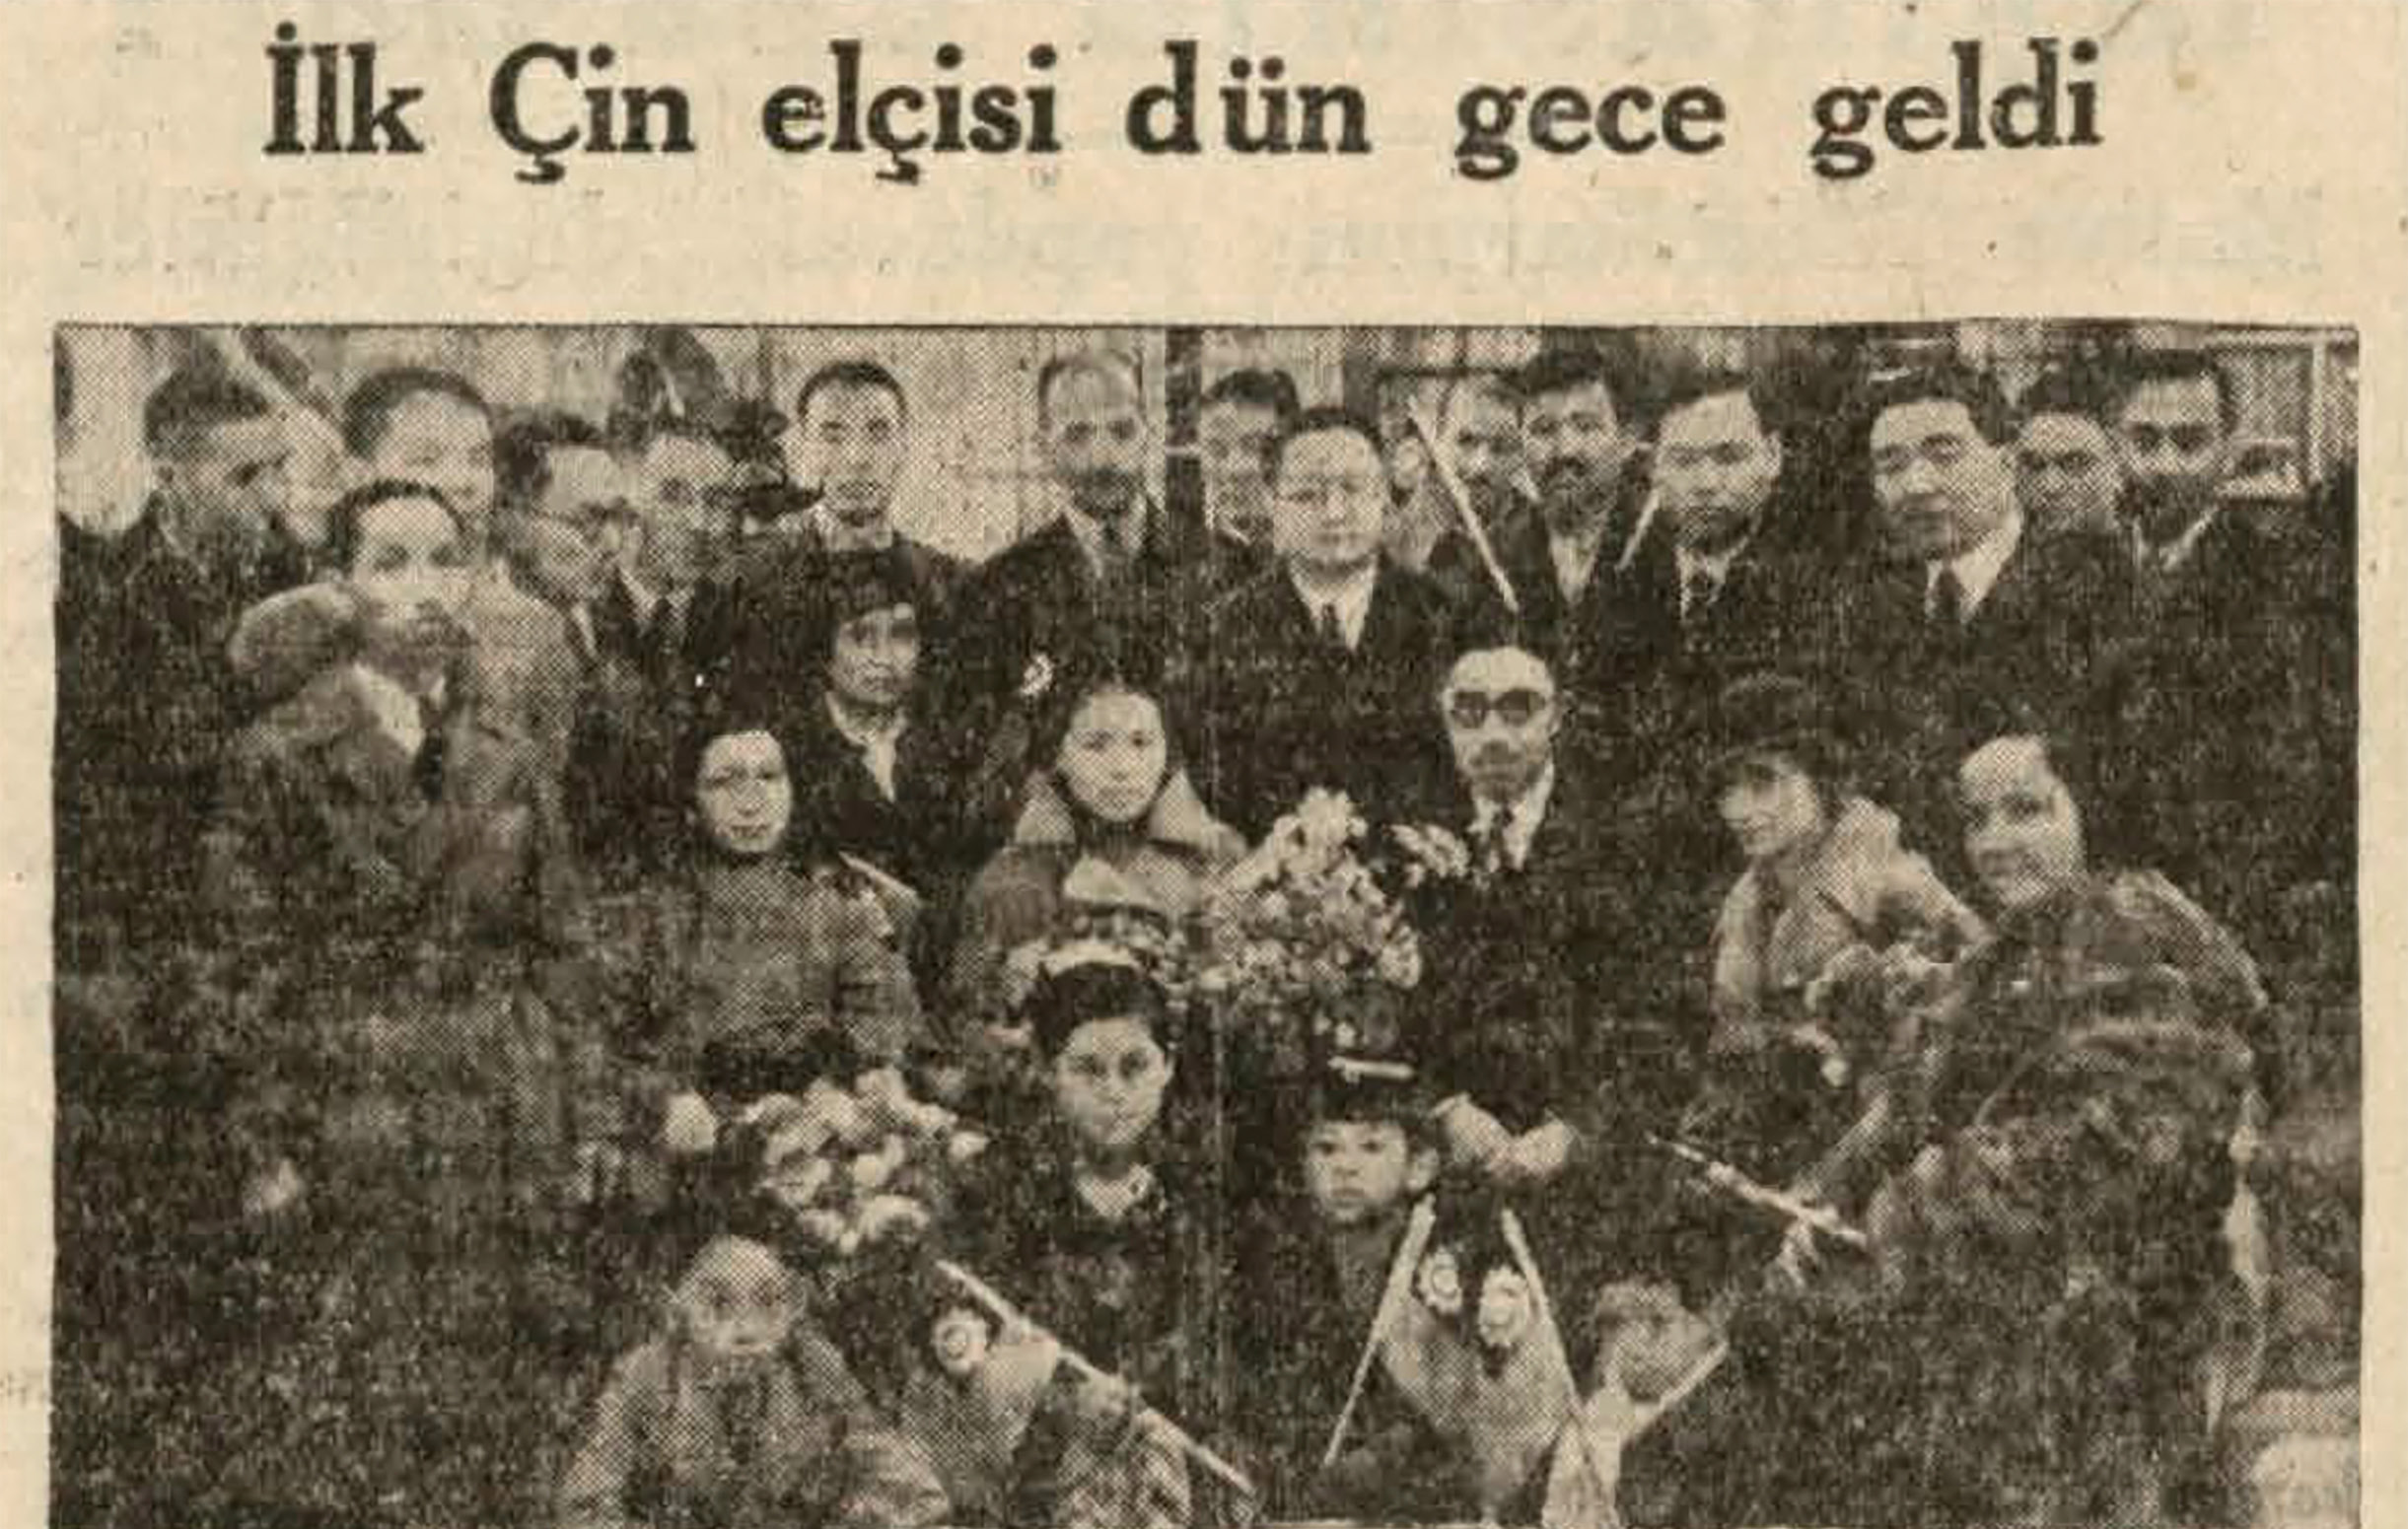 Çin Elçisi He Yao Zu’yu İstanbul’da karşılandı. (Cumhuriyet Gazetesi, 8 Mayıs 1935)